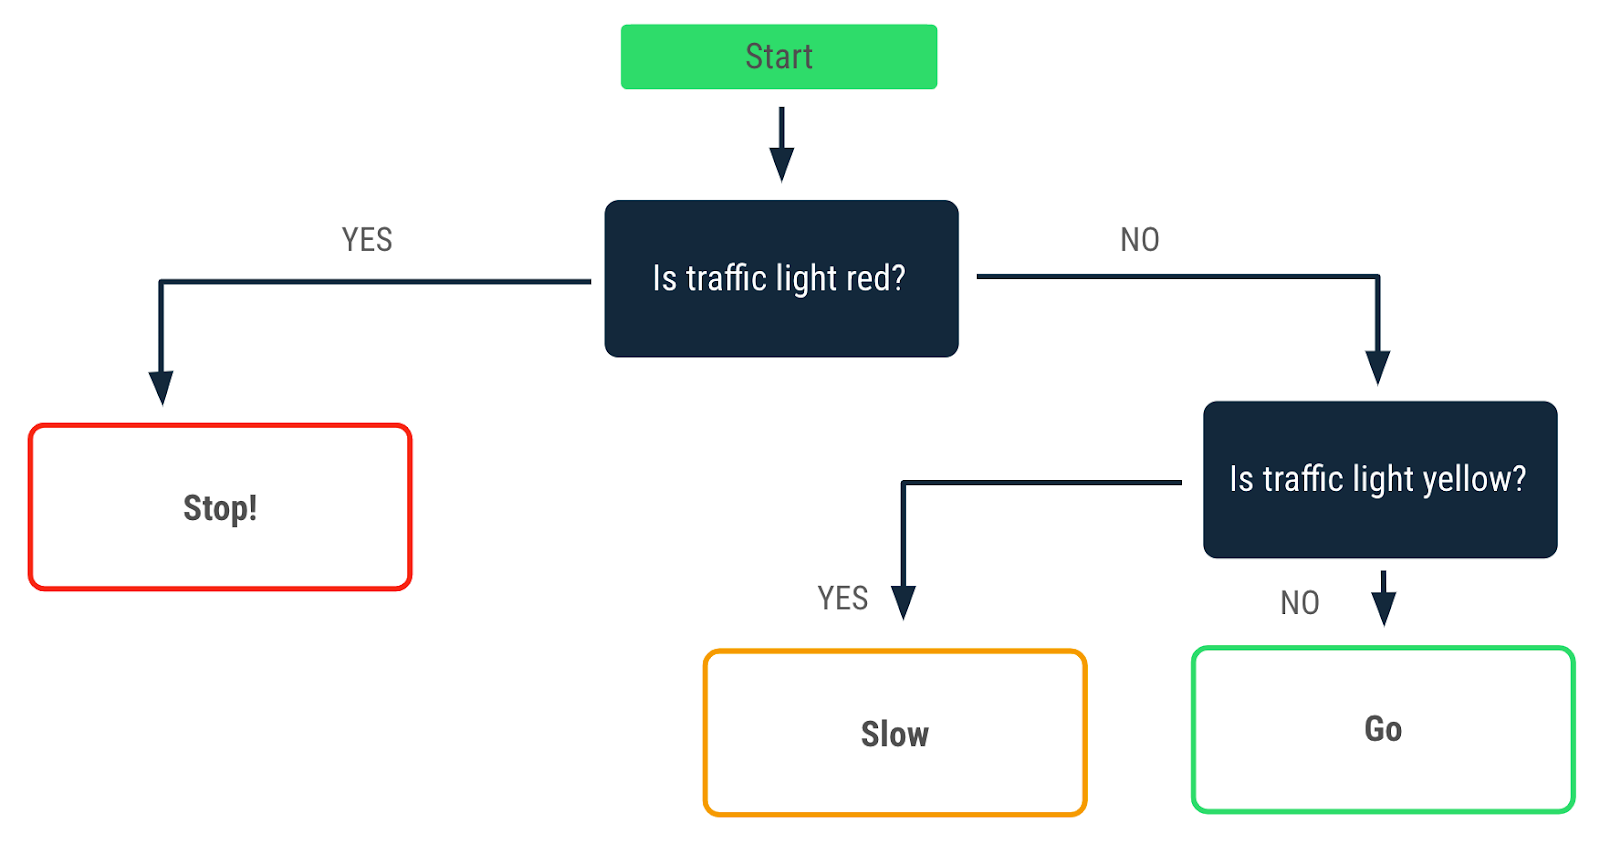 一个流程图，描述了红绿灯亮红灯时做出的决策。“yes”箭头指向“Stop!”消息。“no”箭头指向红绿灯亮黄灯时做出的另一个决策。“yes”箭头从该决策伸出，指向“Slow”消息；“no”箭头指向“Go”消息。